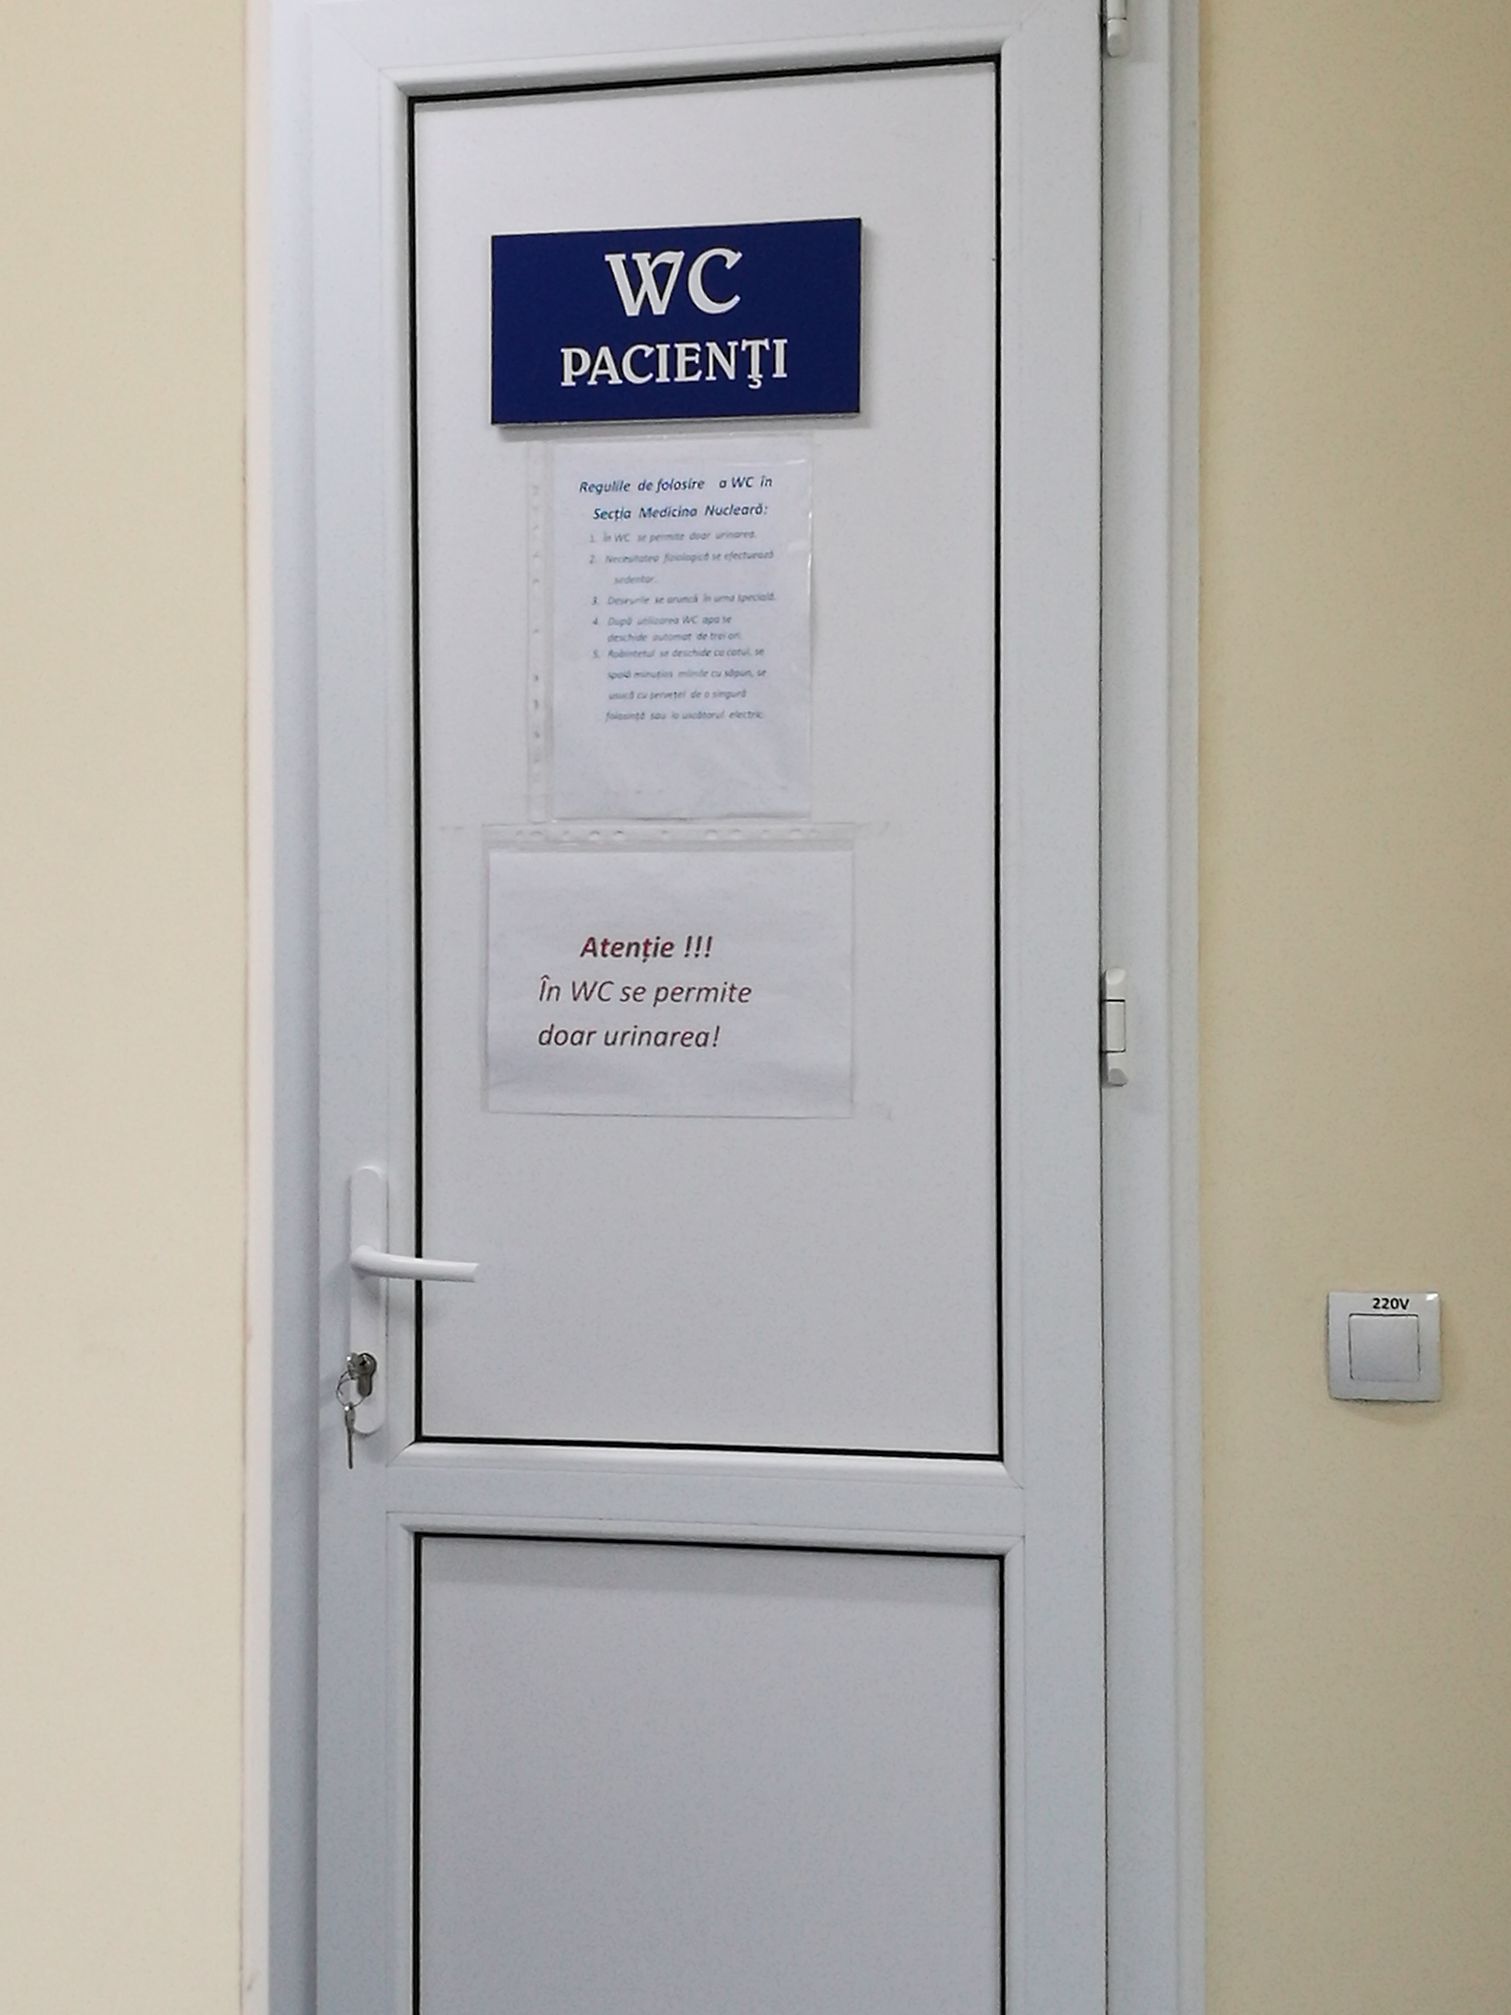 POZA ZILEI. Toaleta dintr-un spital din Chișinău în care se permite doar să urinezi